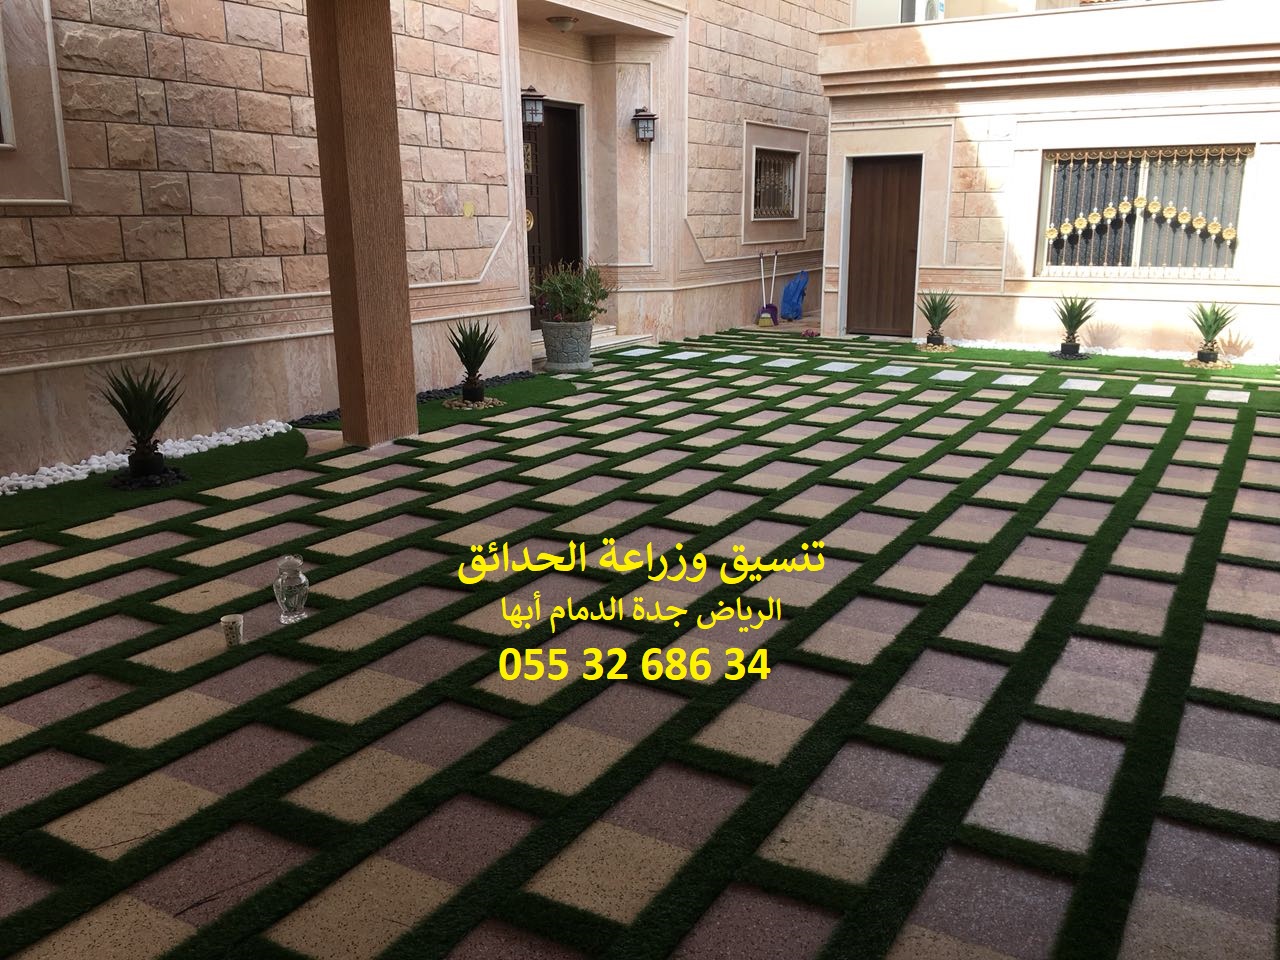 شركة تنسيق حدائق الرياض جدة الدمام ابها 0553268634 P_878331sc1